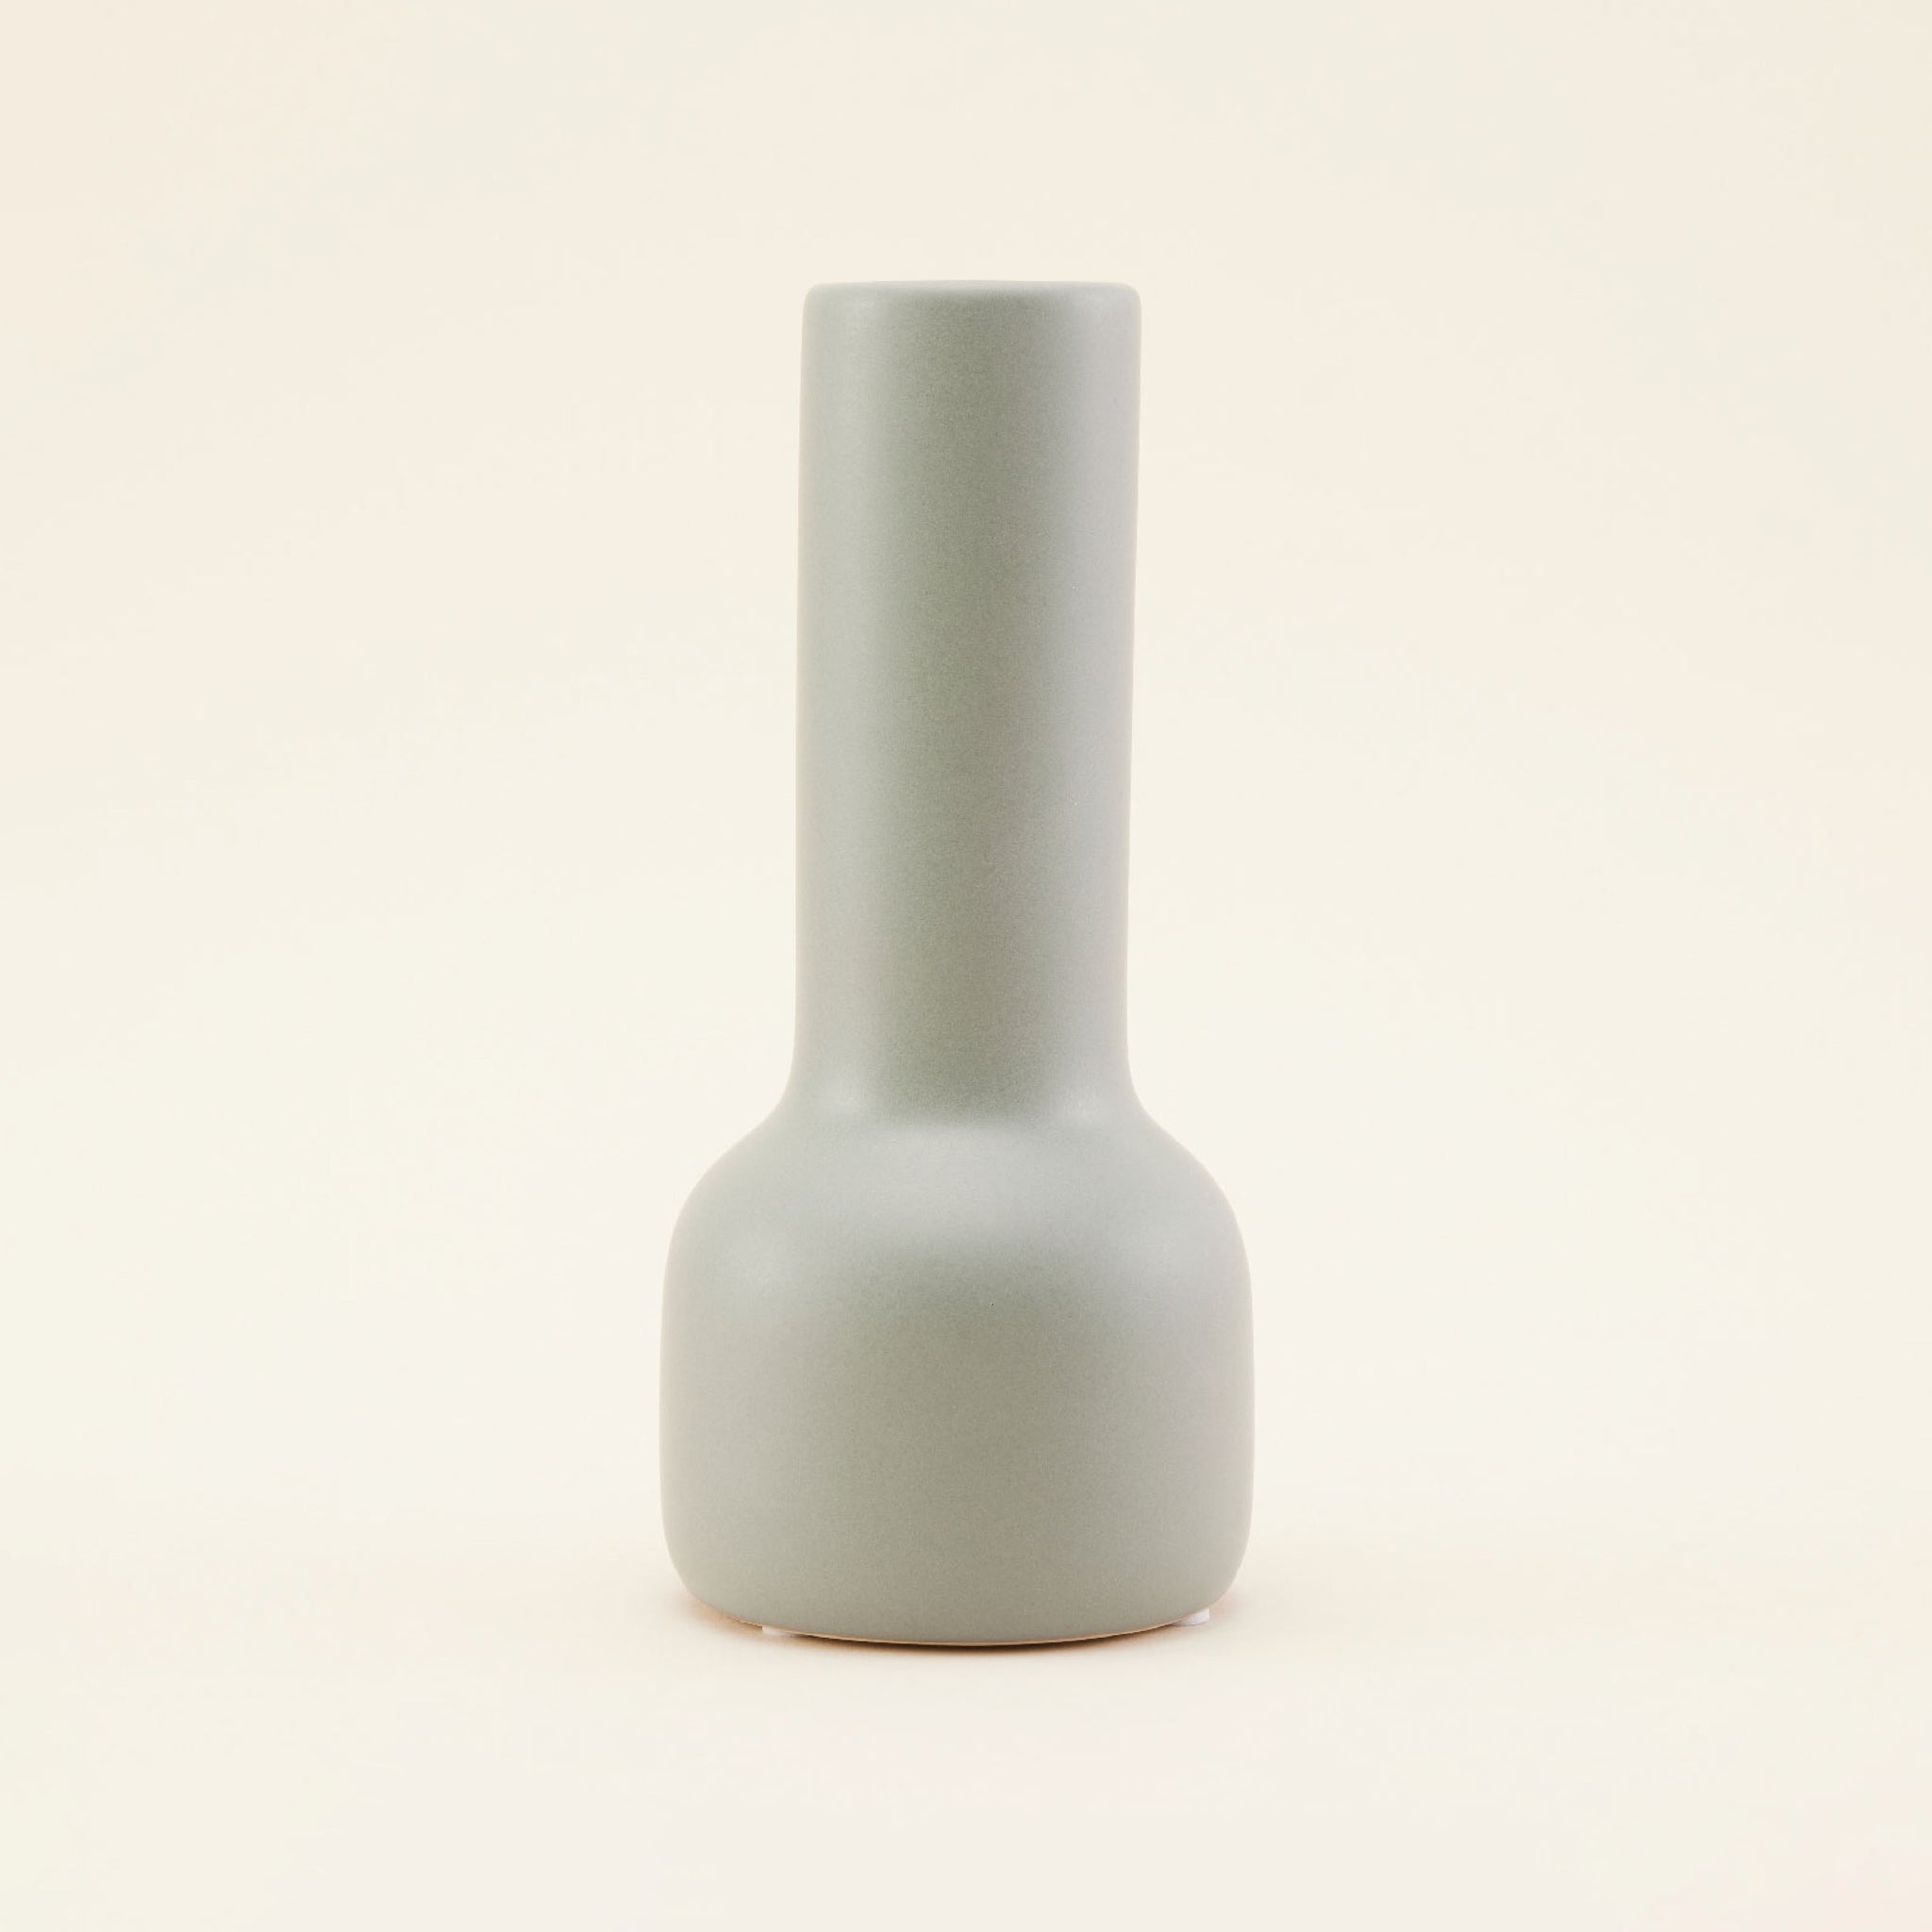 Porcelain Vase | แจกัน เซรามิก